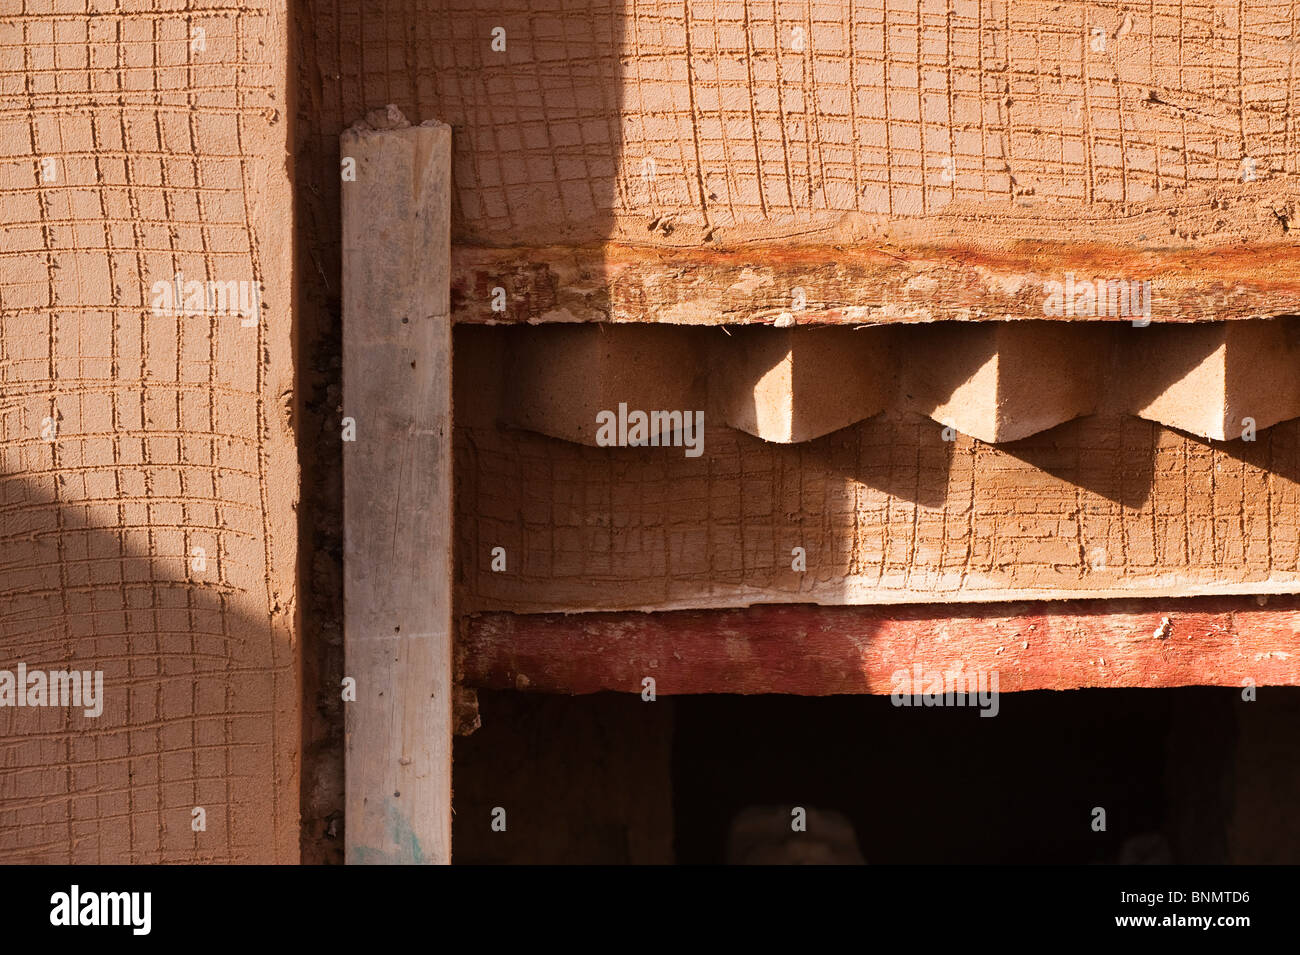 Détail, bâtiment en brique de boue traditionnel, Figuig, province de Figuig, région orientale, le Maroc. Banque D'Images